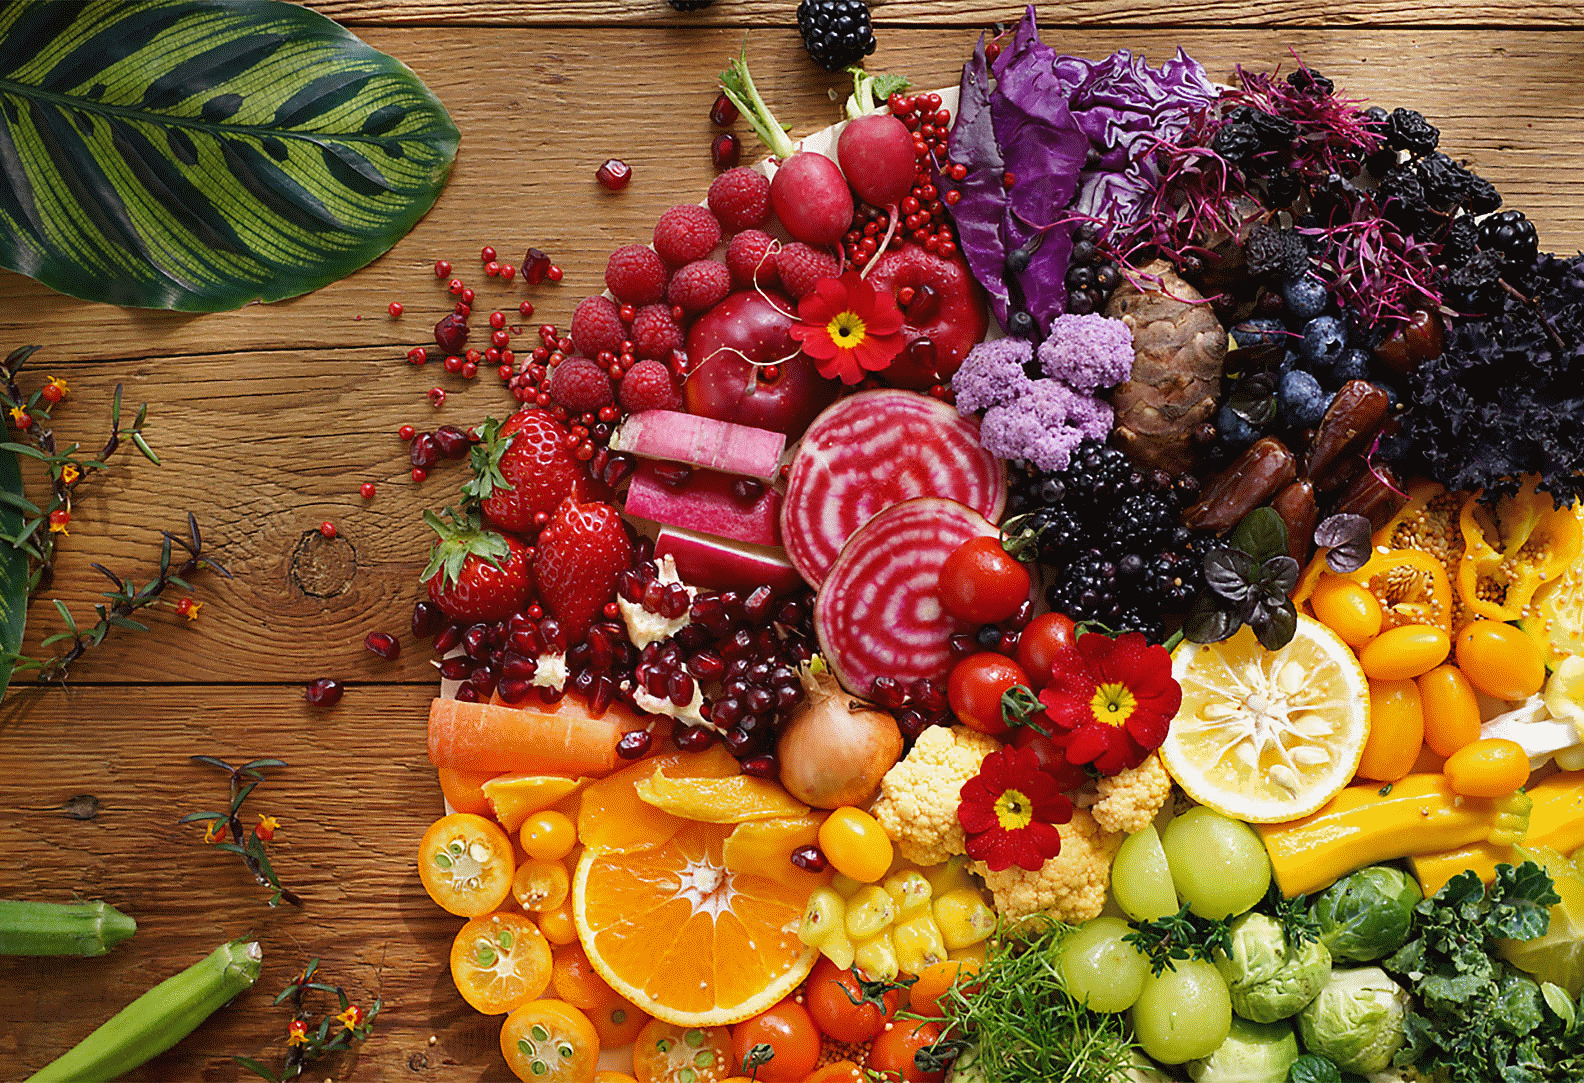 Image de légumes et de fruits colorés prise avec cet objectif à haute résolution dans chaque coin